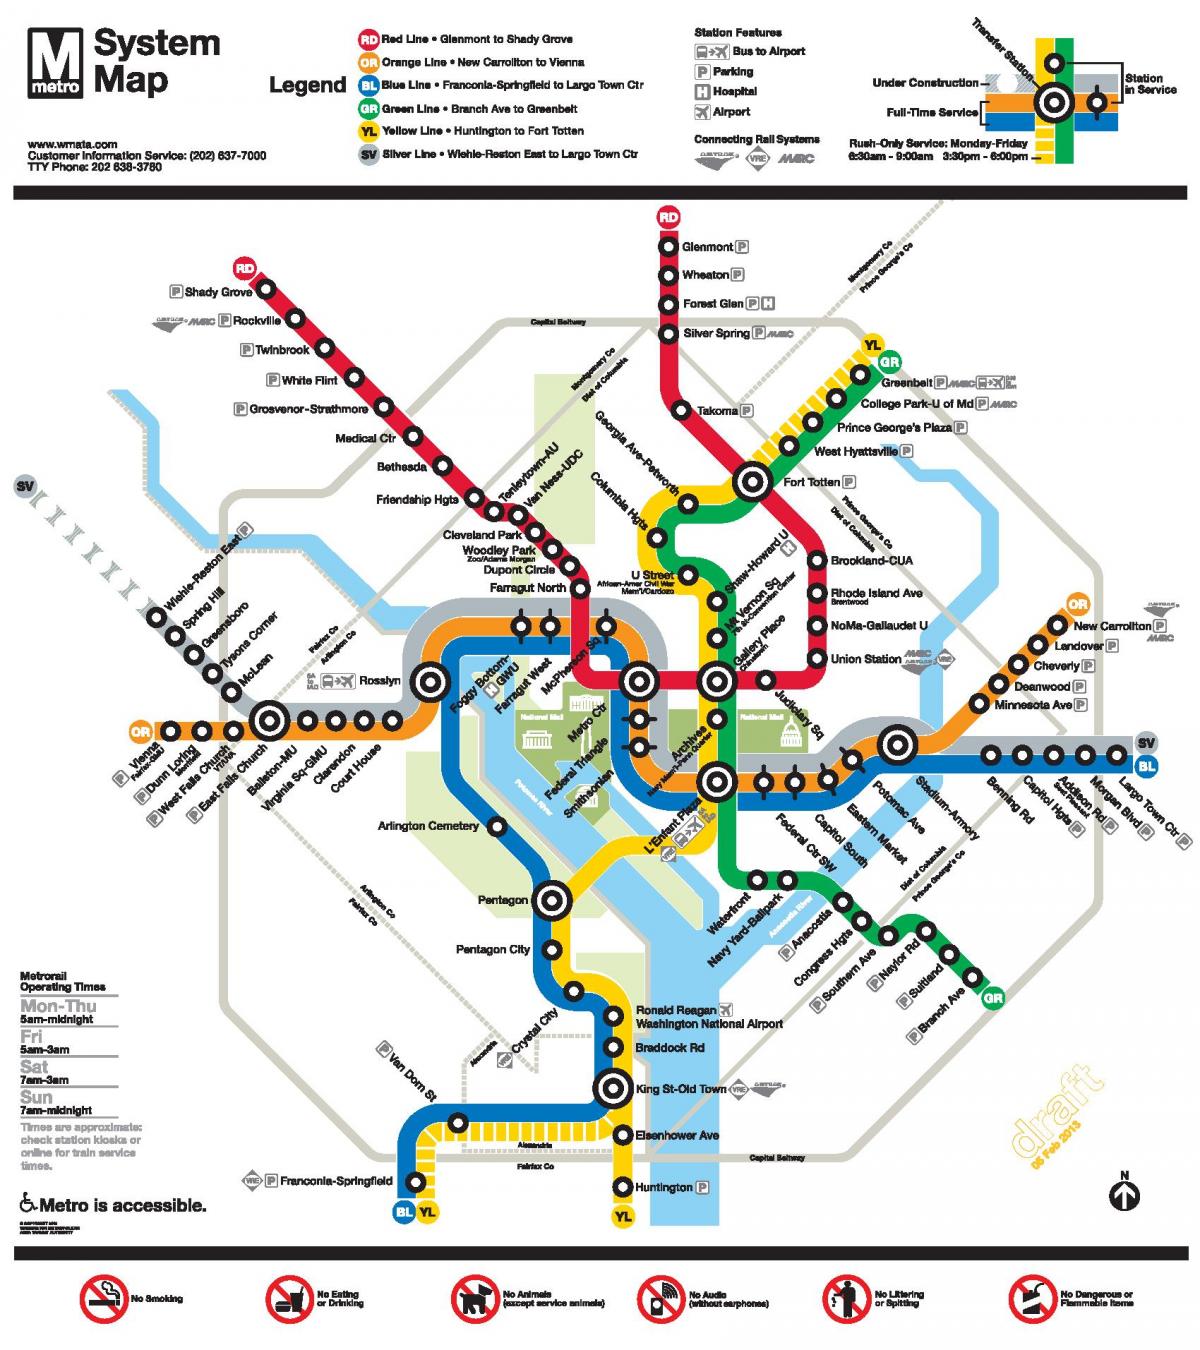 Waszyngton linii metra DC mapie